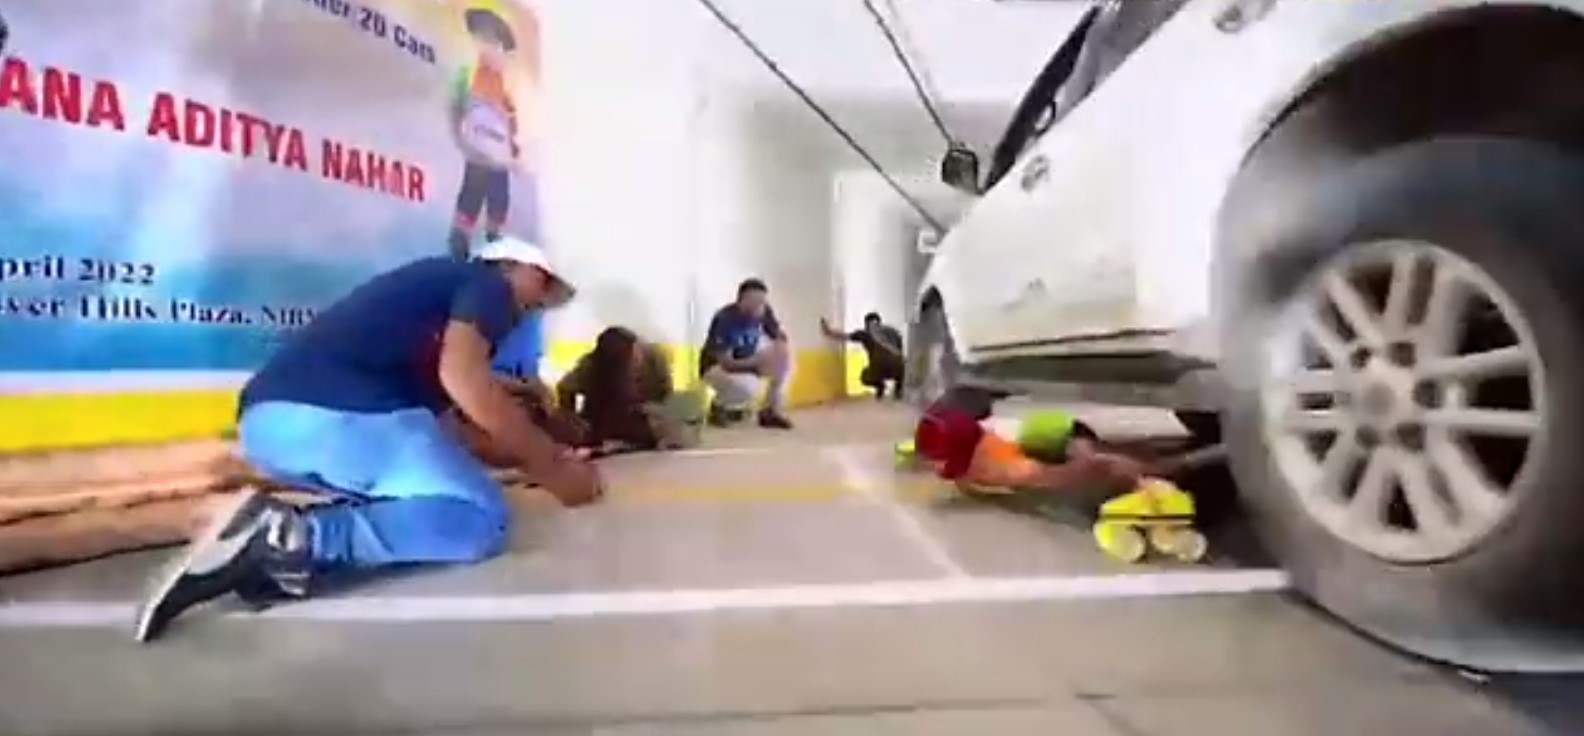 Indian girl breaks record for under car skateboarding